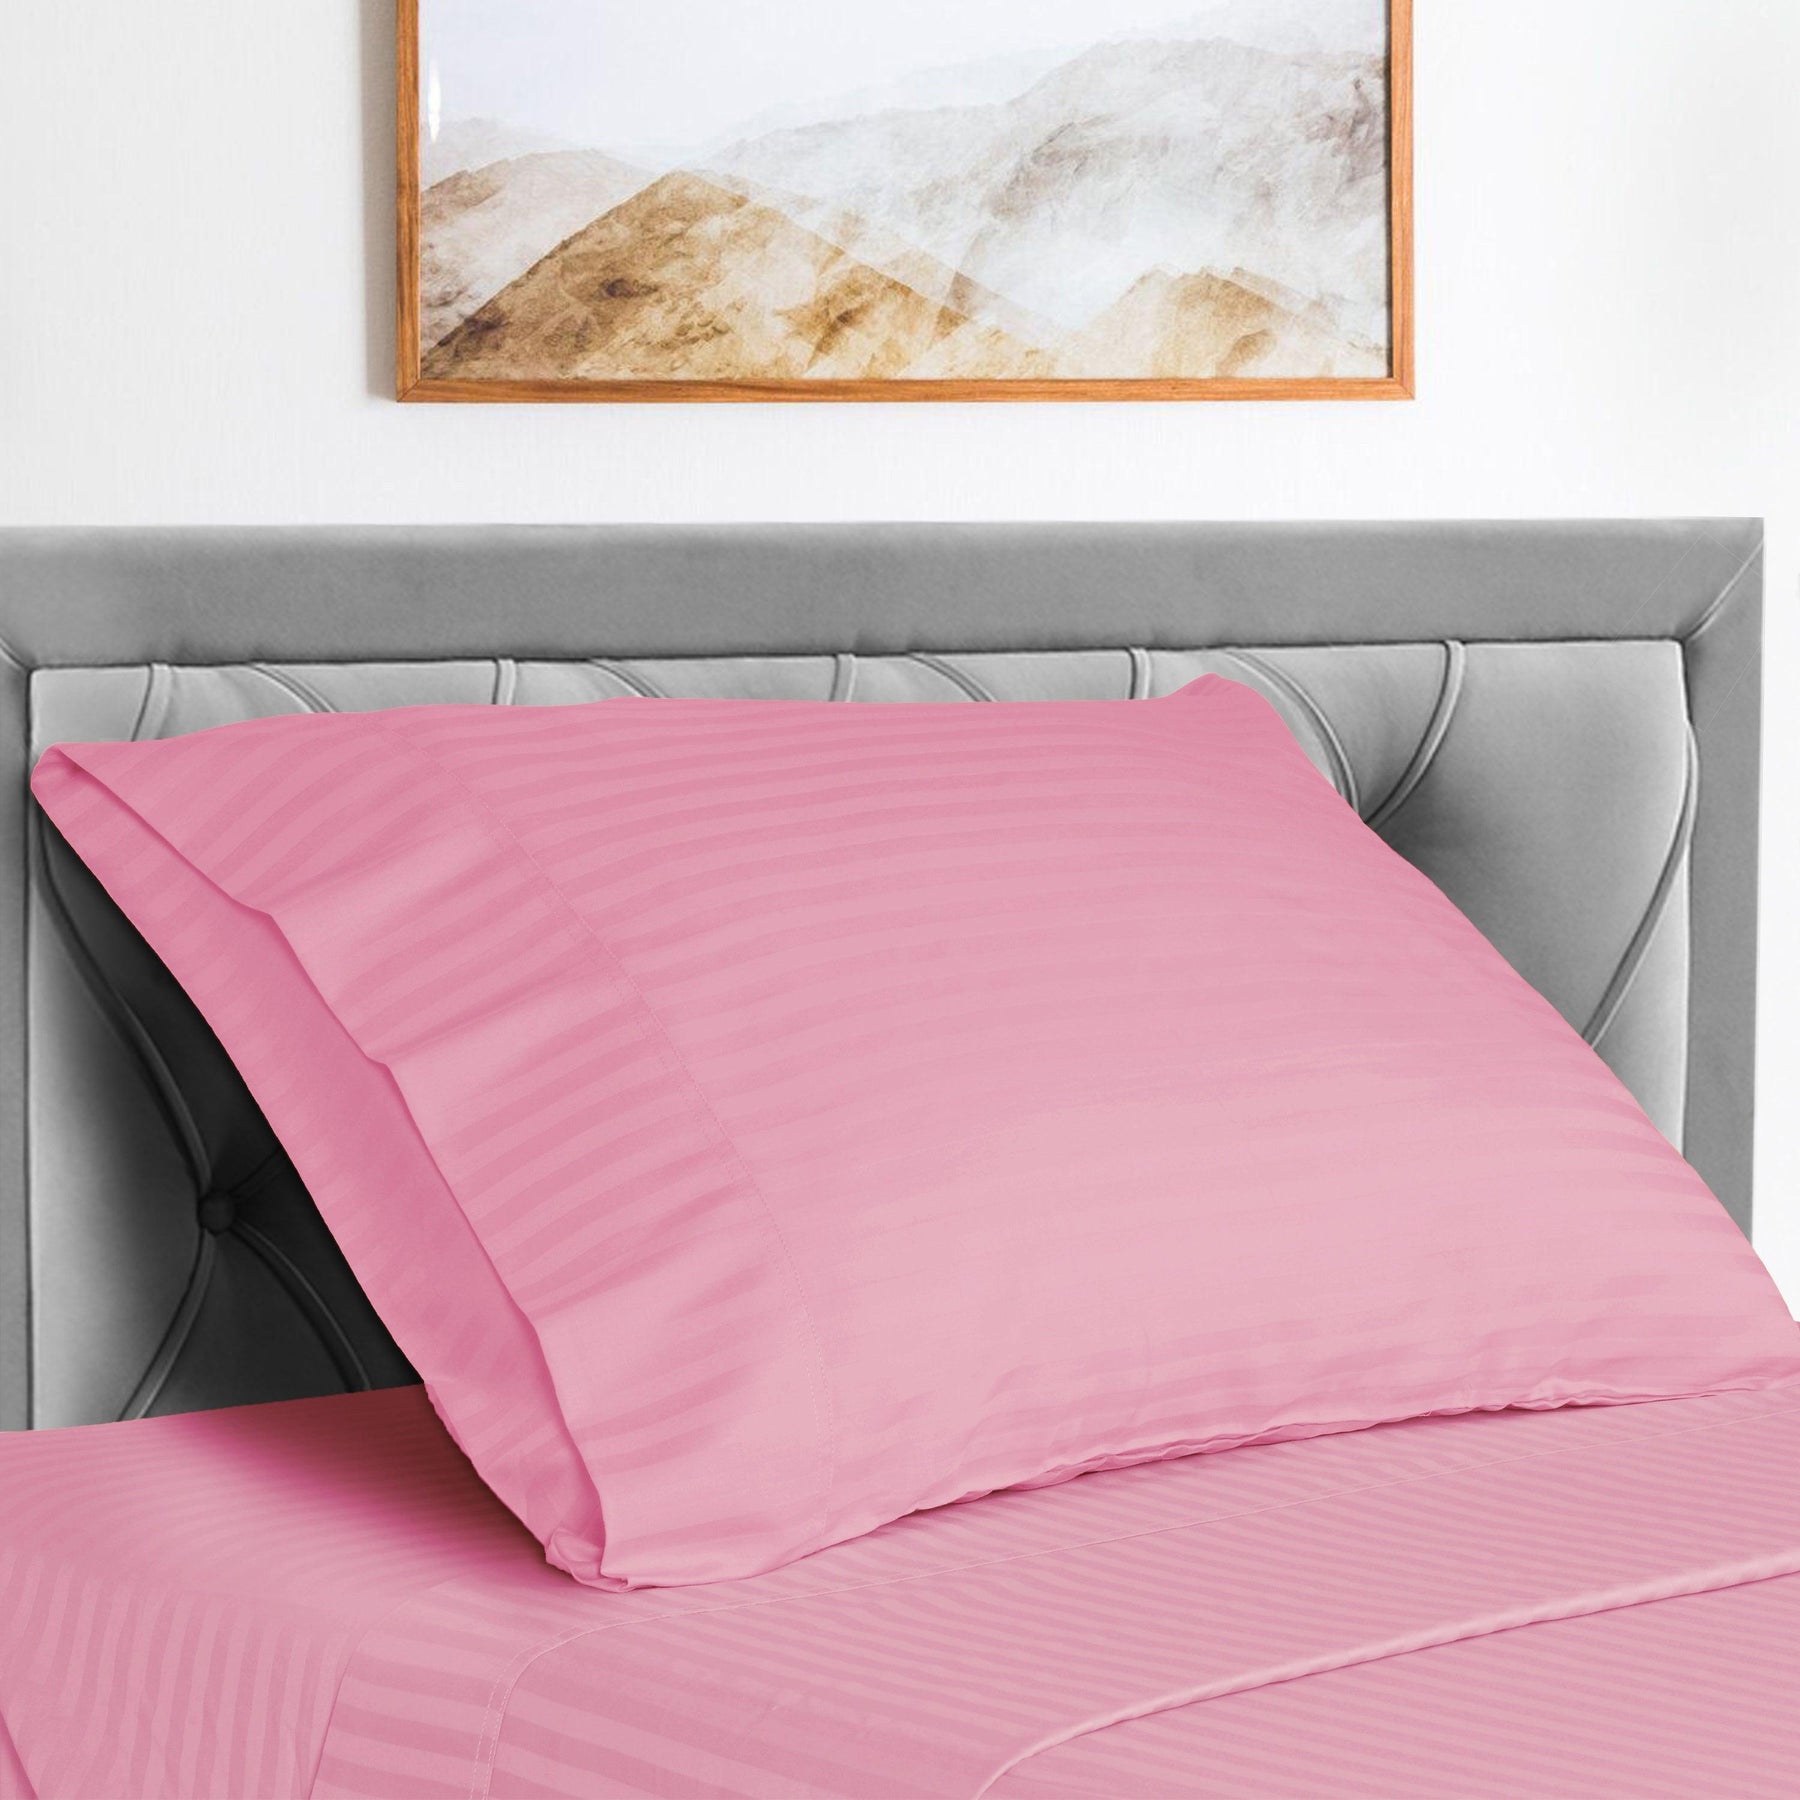  Superior Microfiber Wrinkle Resistant and Breathable Stripe Deep Pocket Bed Sheet Set - Pink